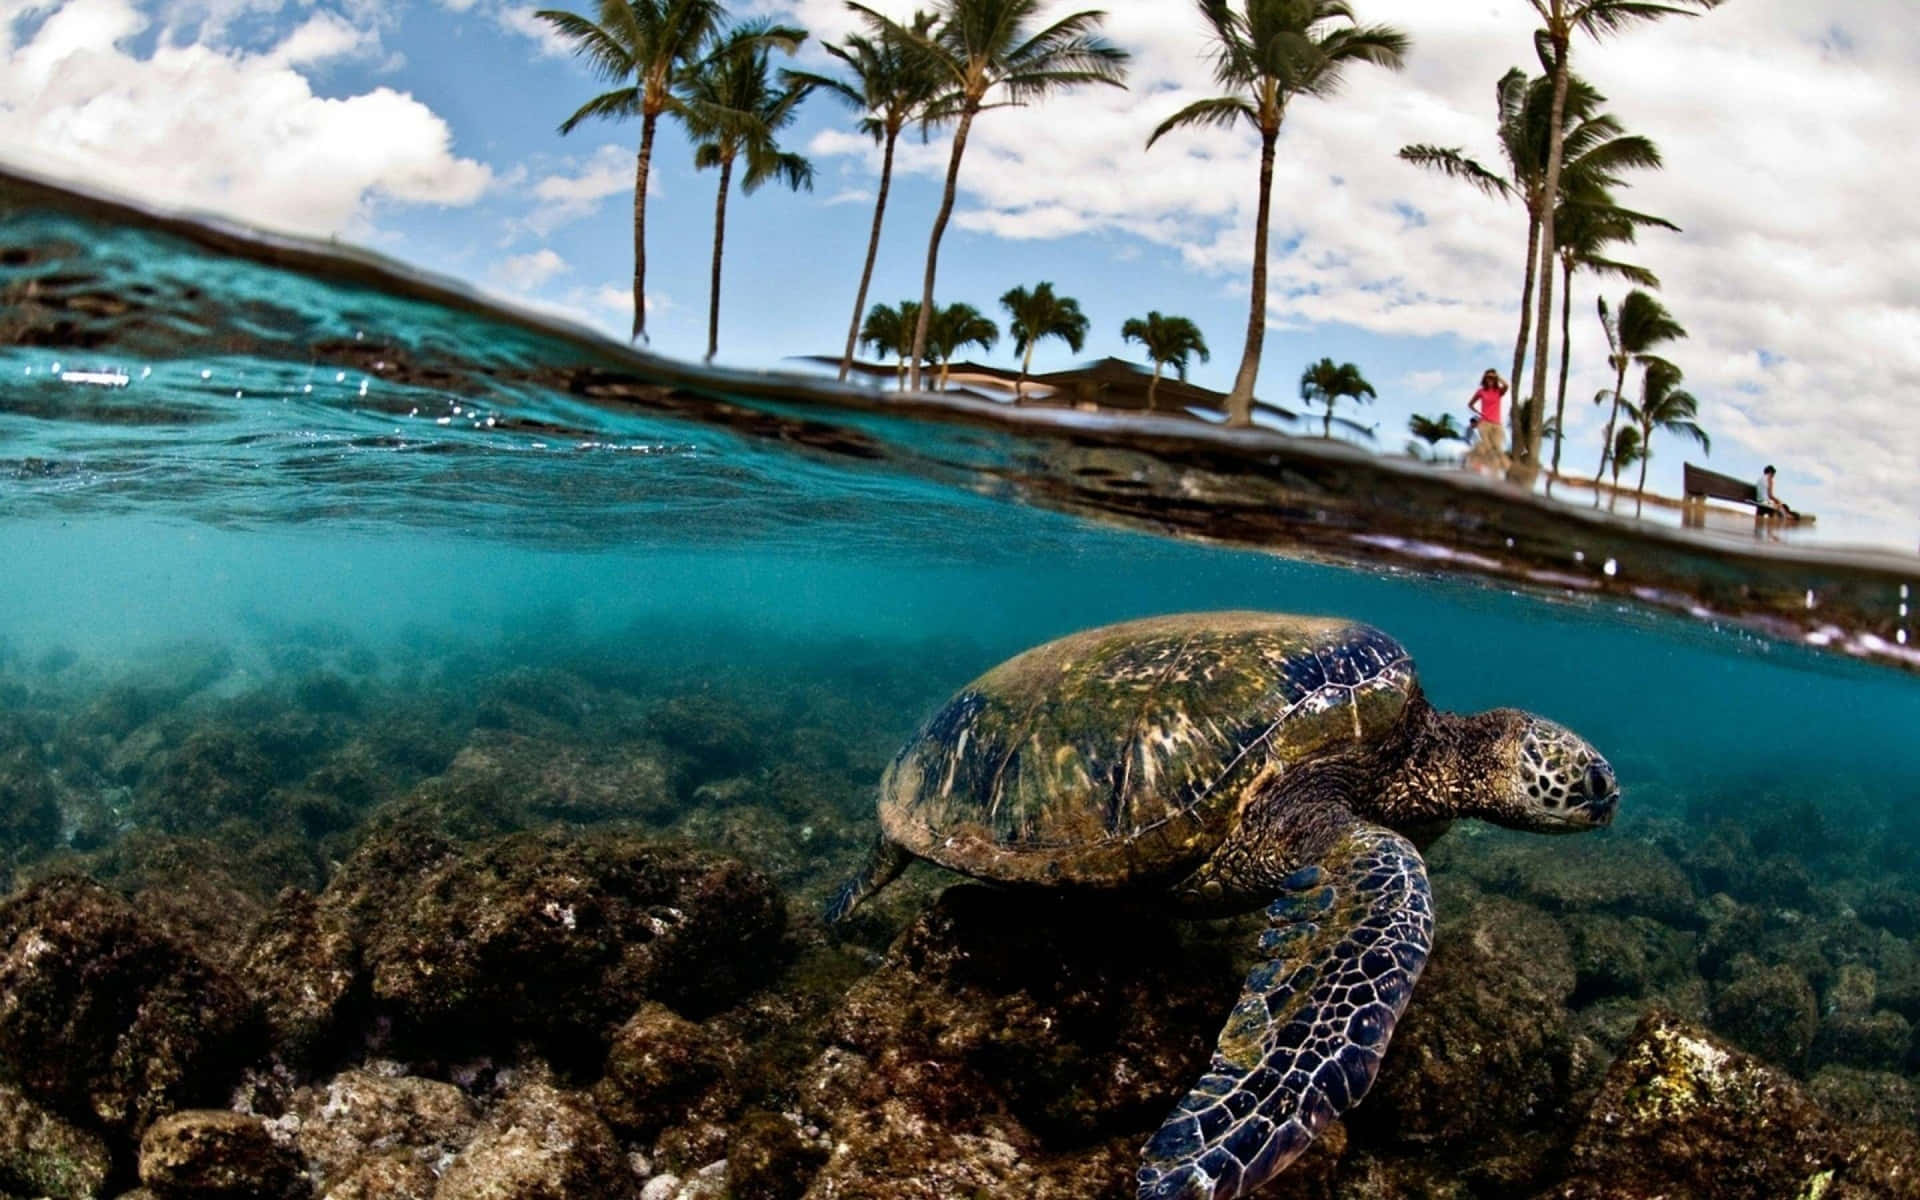 Eineschildkröte Schwimmt Im Ozean In Der Nähe Von Palmen.